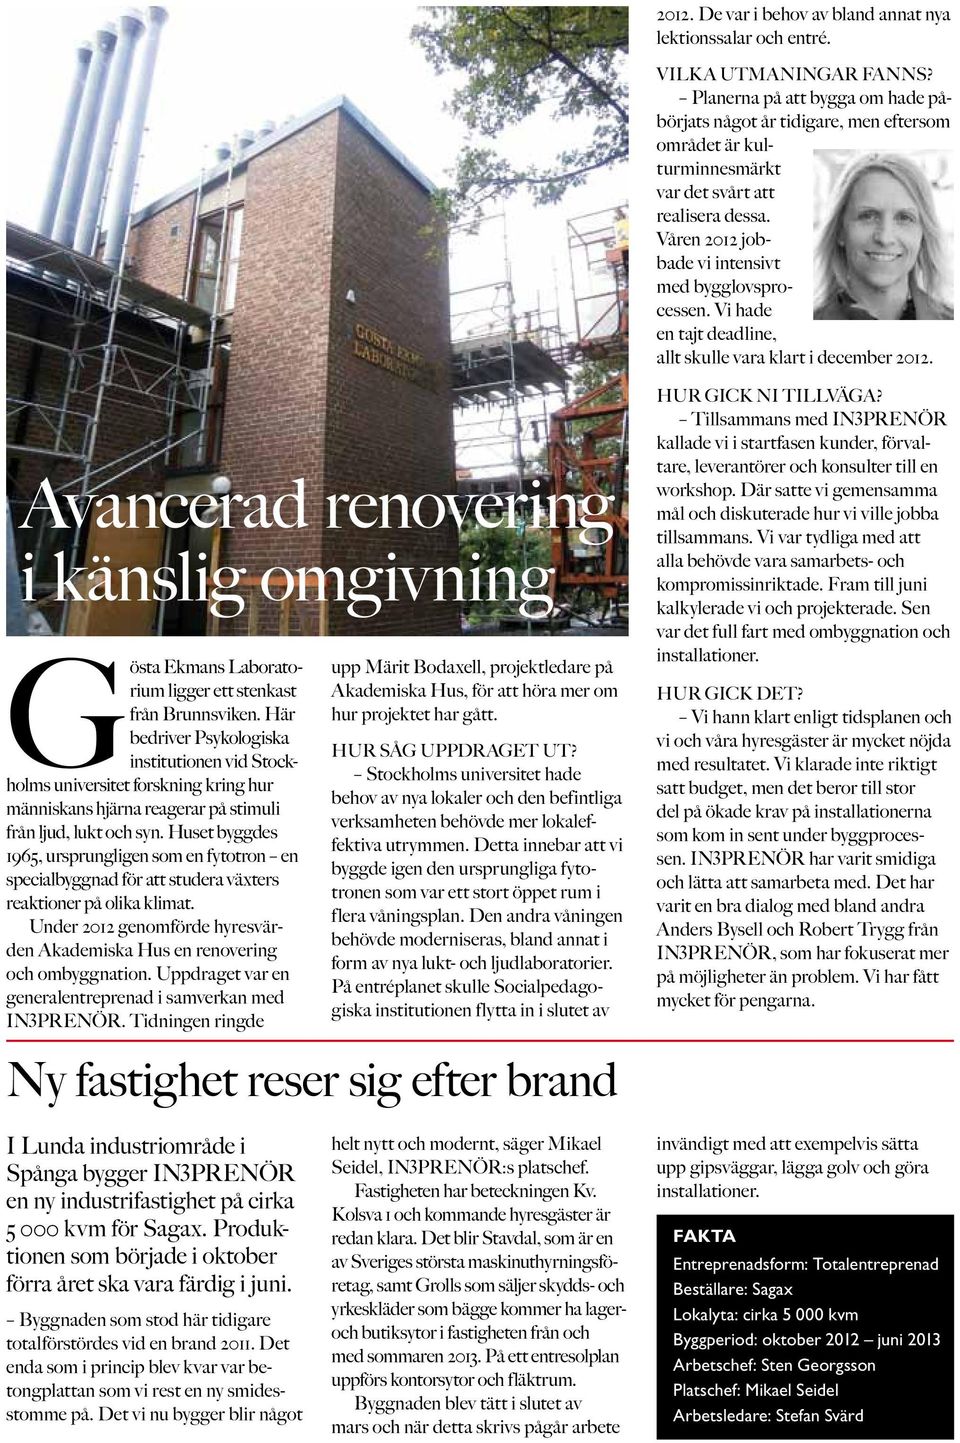 Vi hade en tajt deadline, allt skulle vara klart i december 2012. Avancerad renovering i känslig omgivning Gösta Ekmans Laboratorium ligger ett stenkast från Brunnsviken.